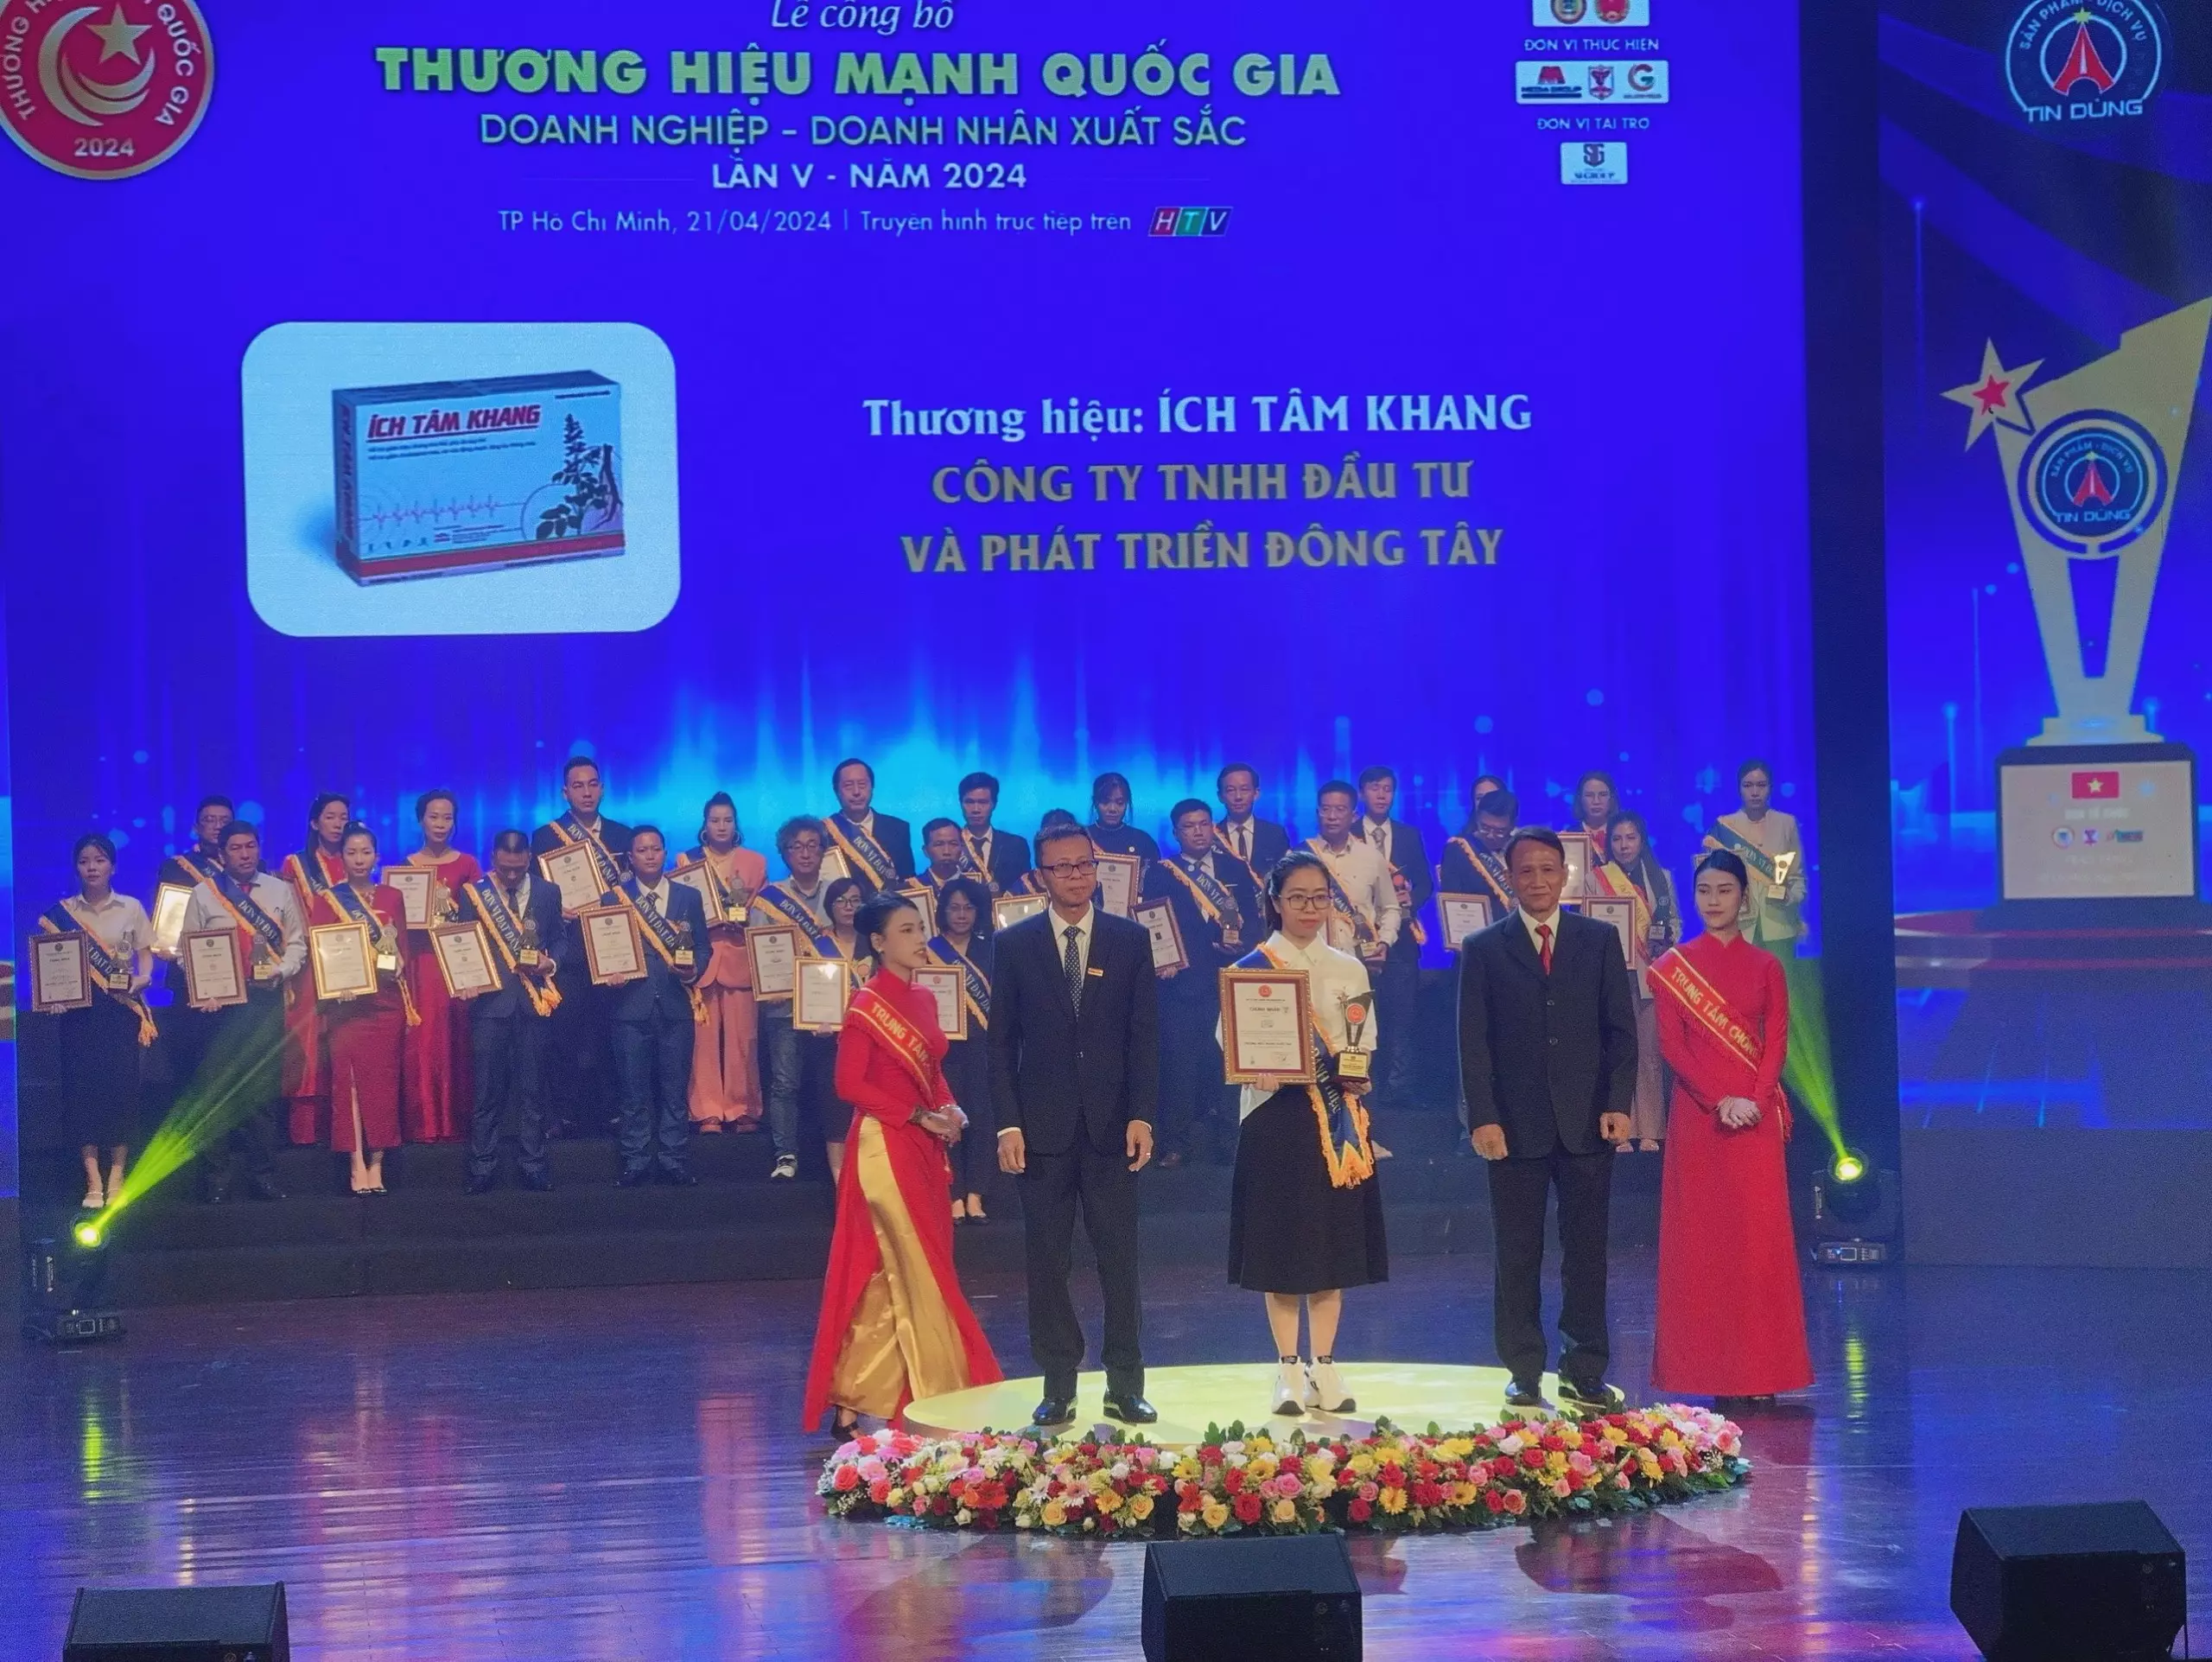 Đại diện nhãn hàng Ích Tâm Khang nhận giải thưởng “Top 10 Thương hiệu mạnh Quốc gia 2024”.webp